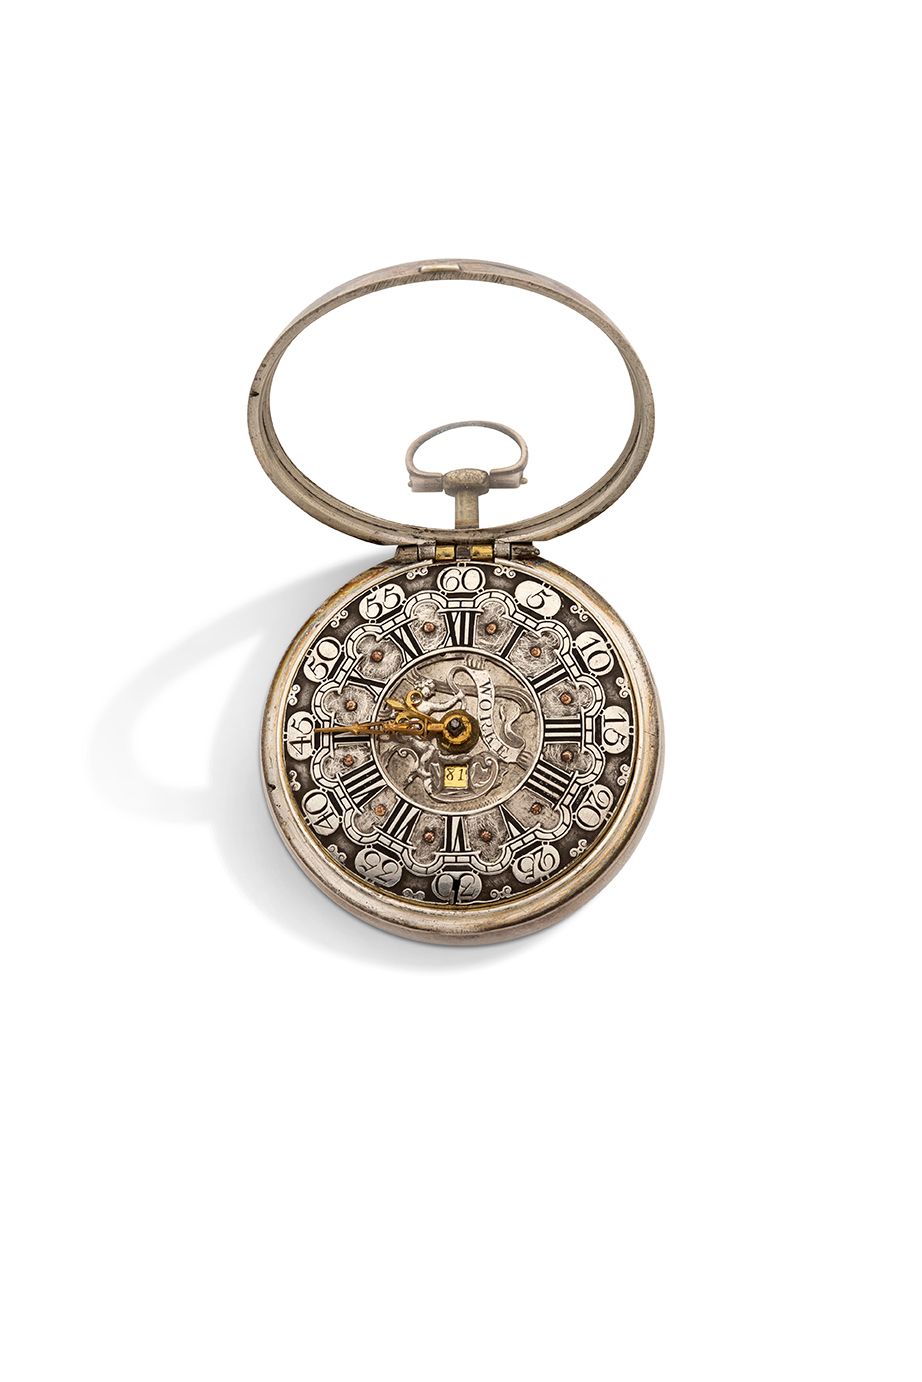 In. WORKE, London 
银色手表，有日期显示窗口



铰链式光滑表壳，背面有英文保证标志和主标志，可打开钥匙。



银色表盘上有罗马数字小时和&hellip;